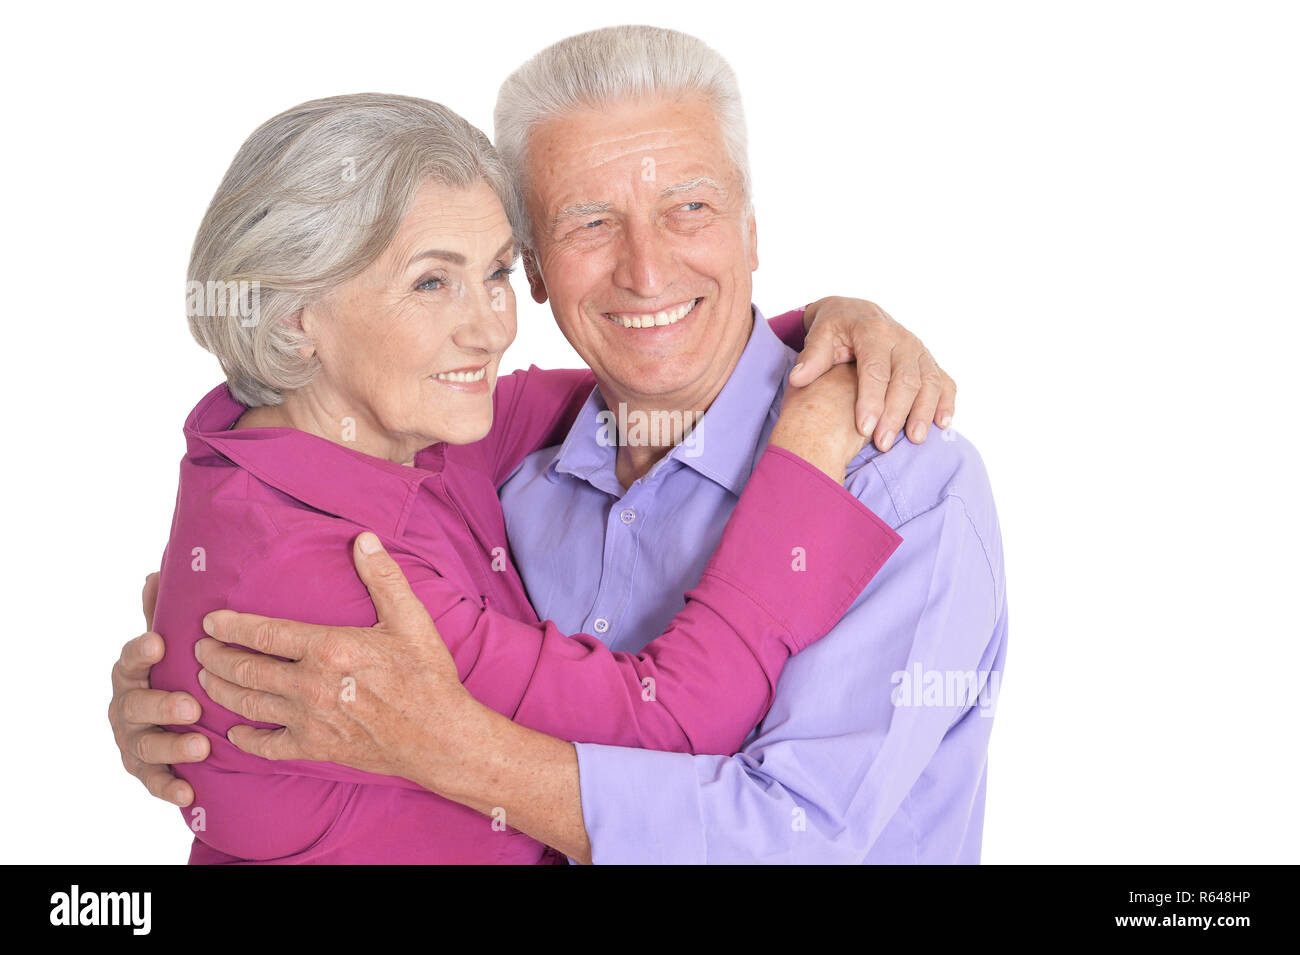 Happy senior couple posing isolated on white background Stock Photo